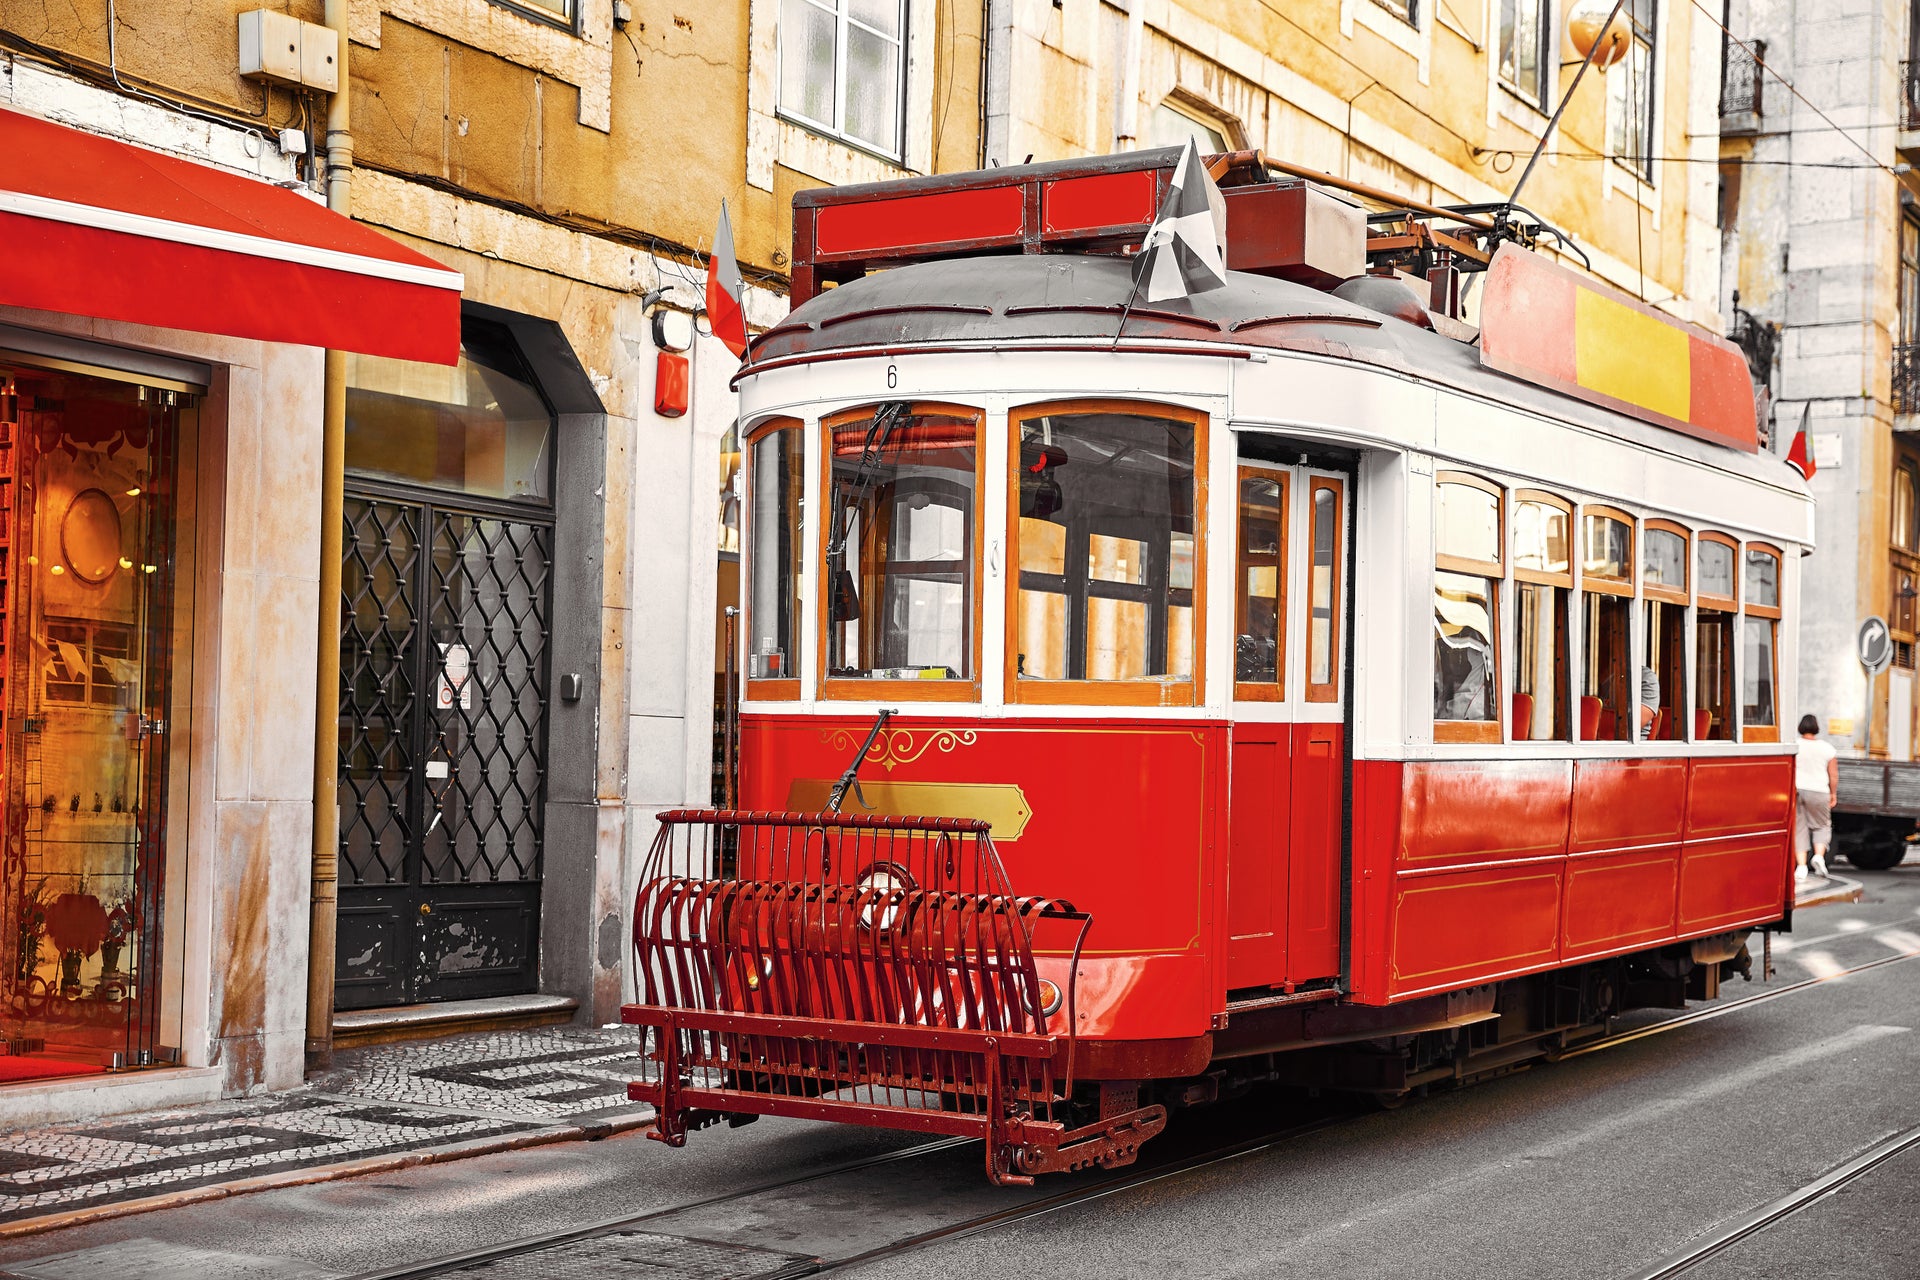 Tranvía turístico de Lisboa + funiculares